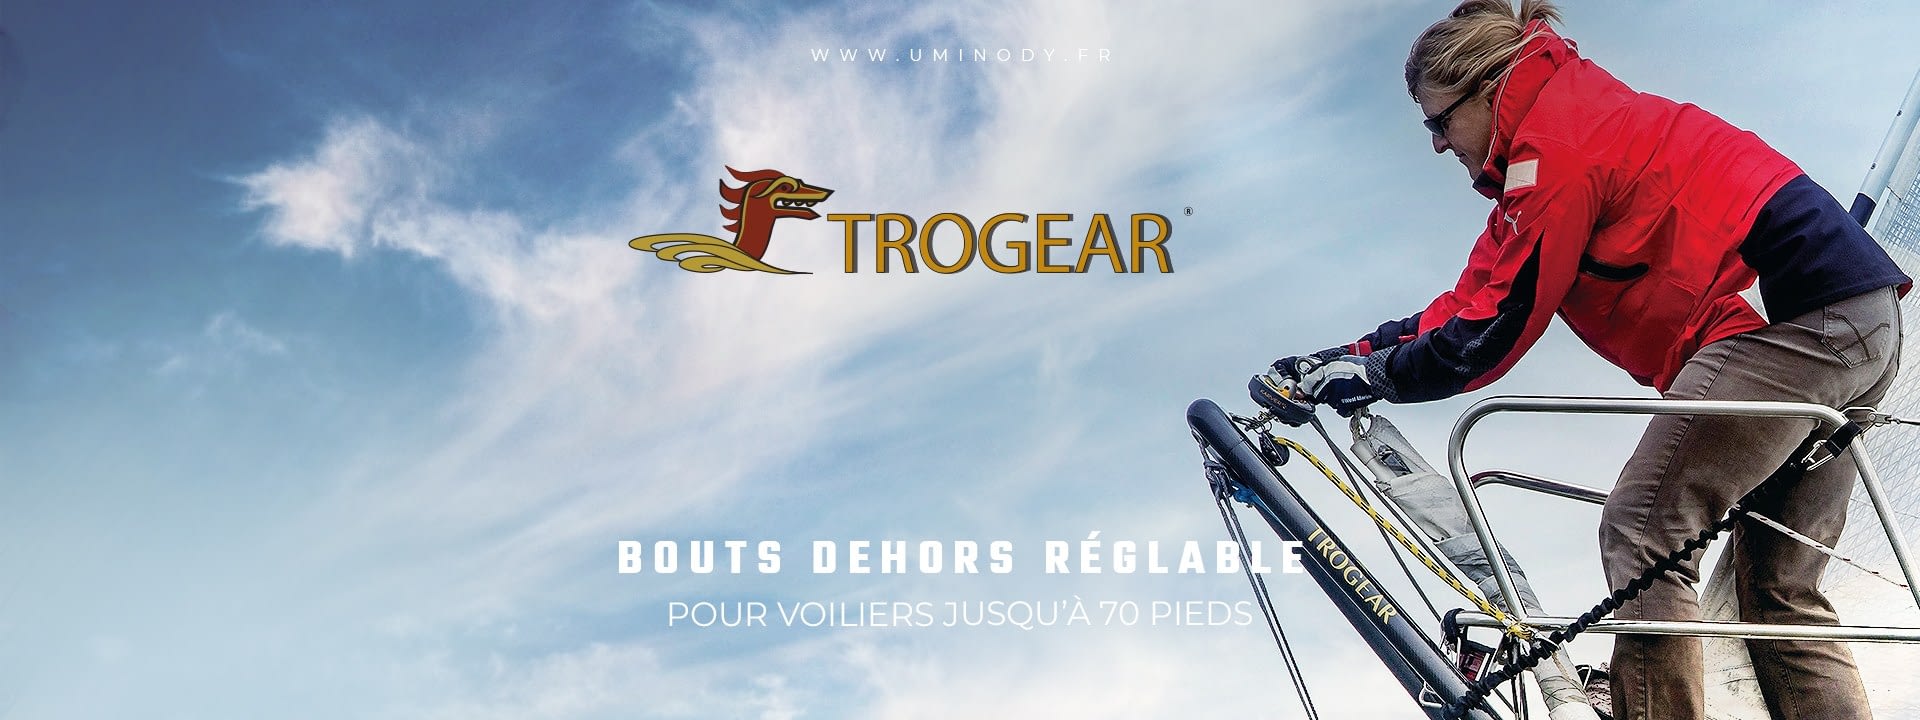 Trogear - Bout Dehors Réglable pour Voiliers jusqu'à 70 pieds